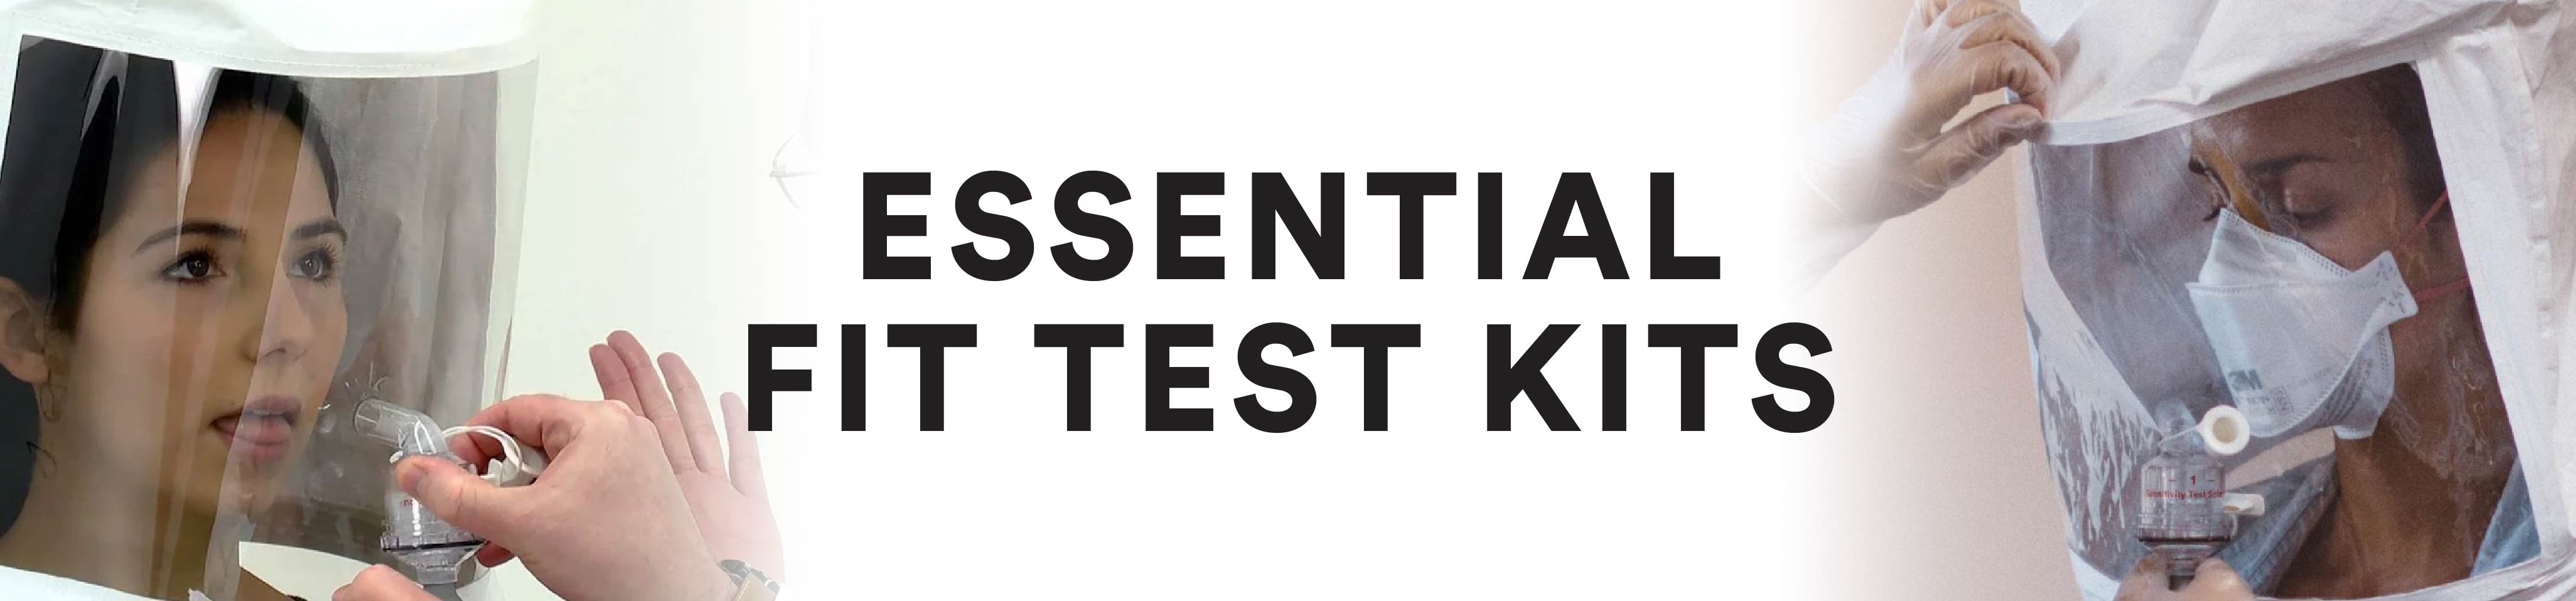 Essential Fit Test Kits